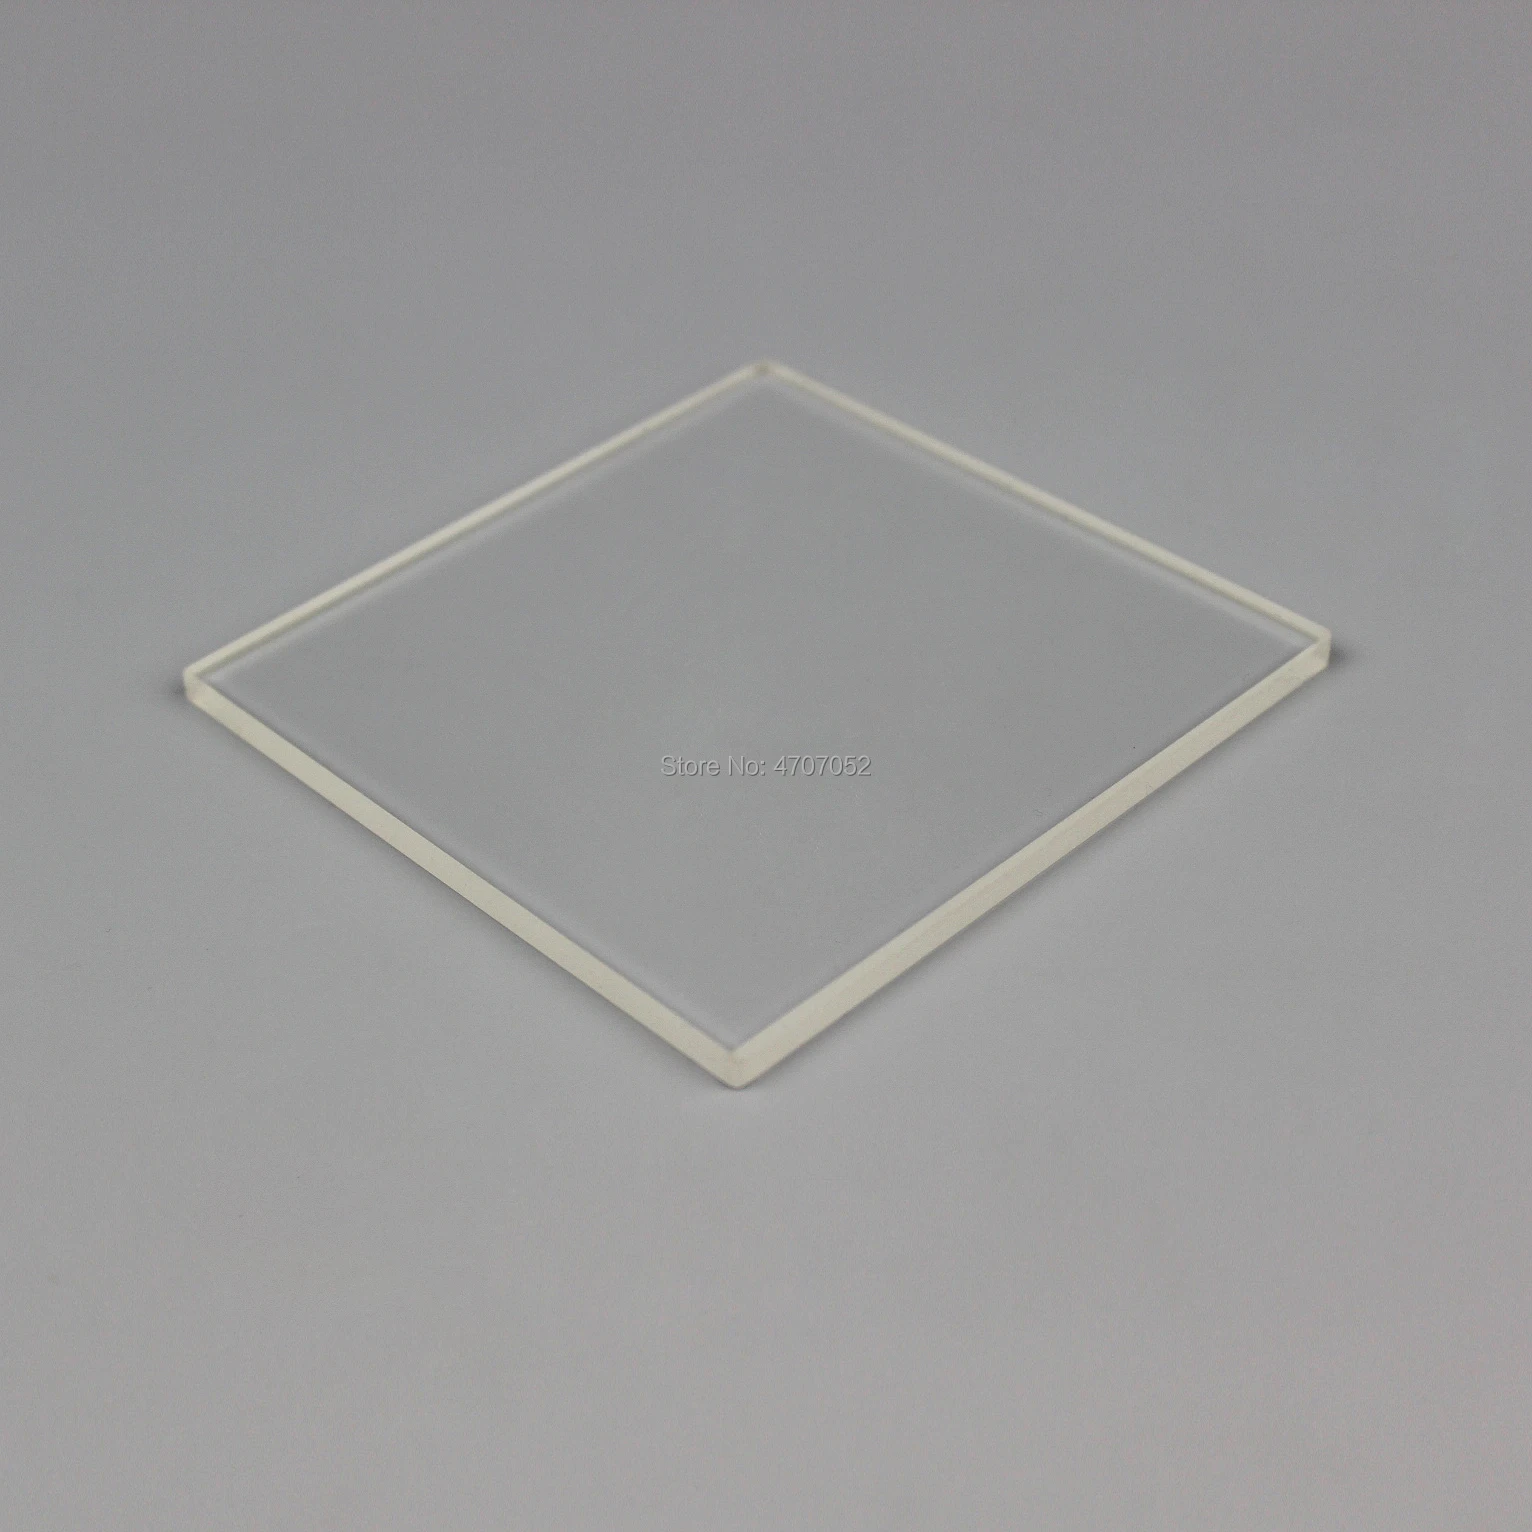 Прозрачный Сплавленный кремнезем лист 30 мм* 30 мм* 1 мм кварцевая квадратная пластина УФ стекло